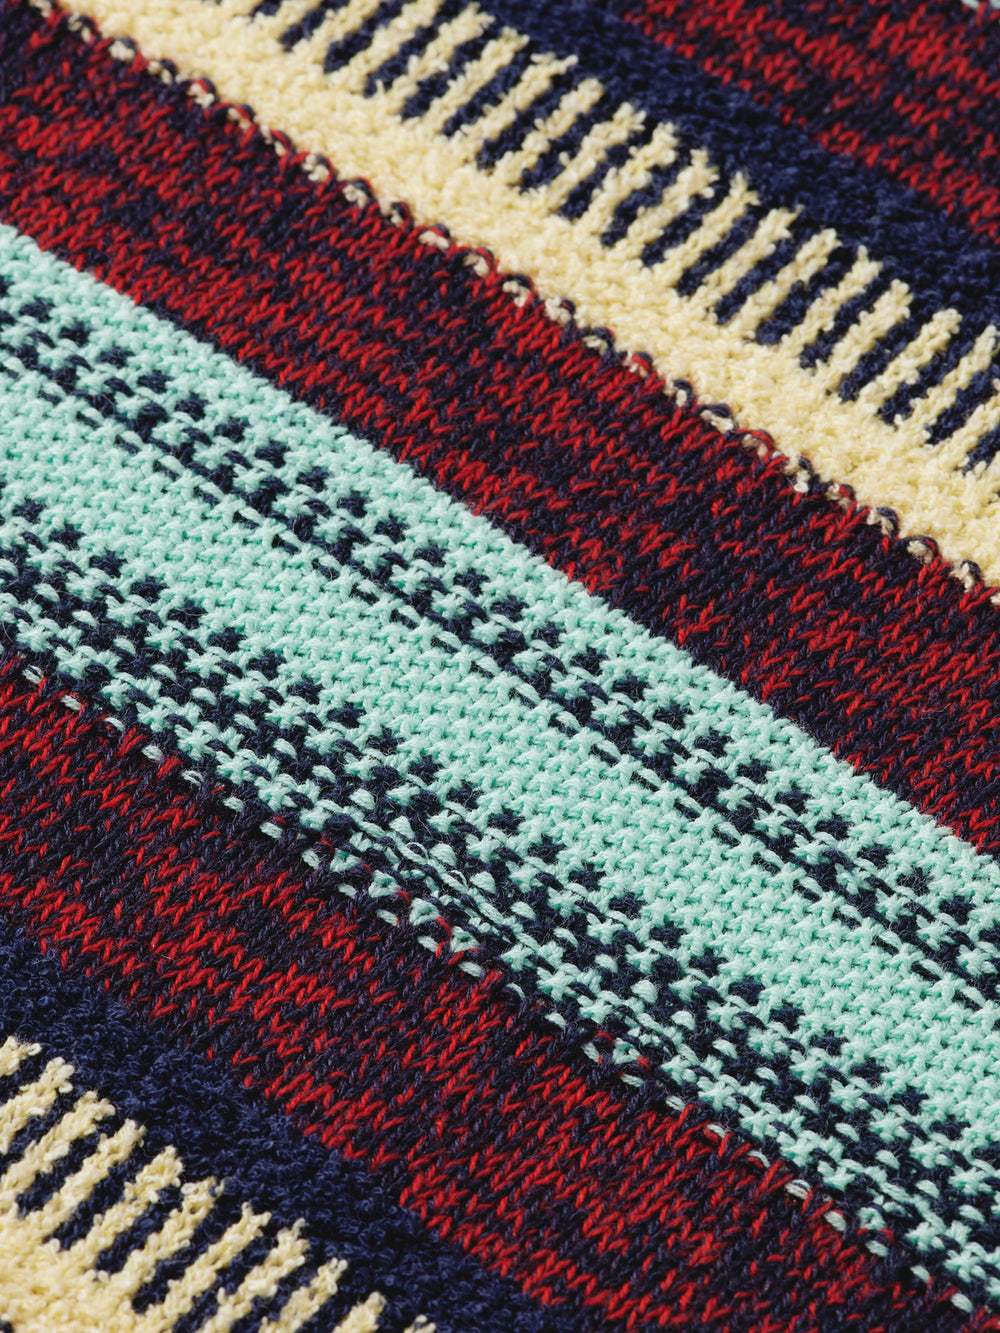 Regular-fit mixed yarn striped pullover - Scotch & Soda AU